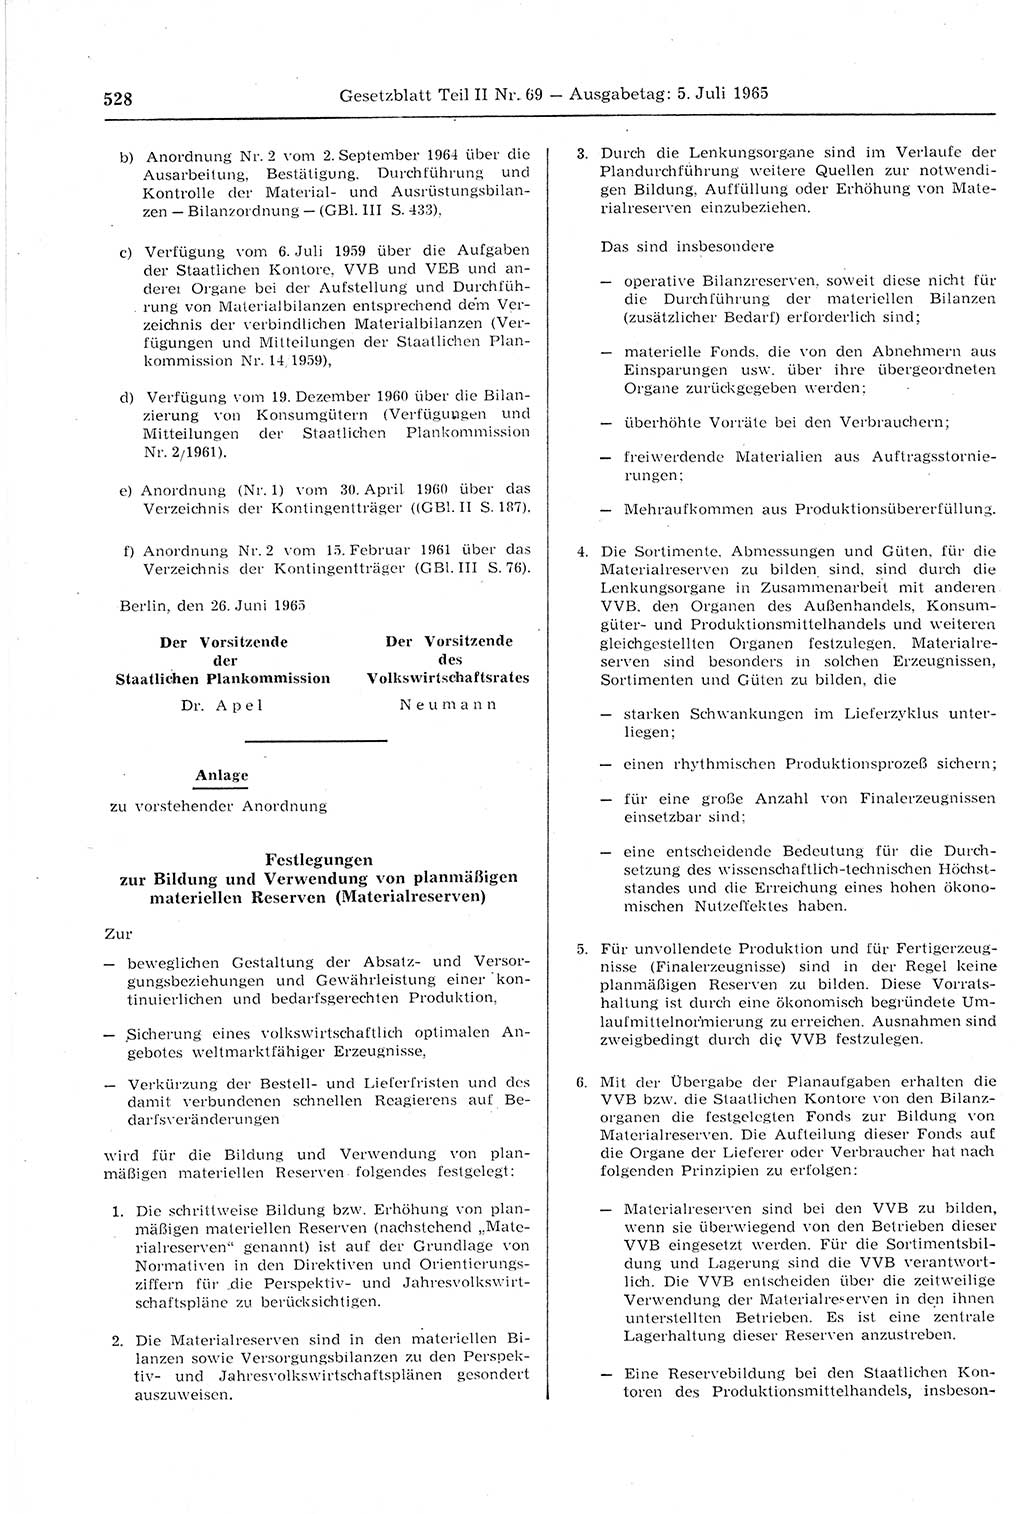 Gesetzblatt (GBl.) der Deutschen Demokratischen Republik (DDR) Teil ⅠⅠ 1965, Seite 528 (GBl. DDR ⅠⅠ 1965, S. 528)